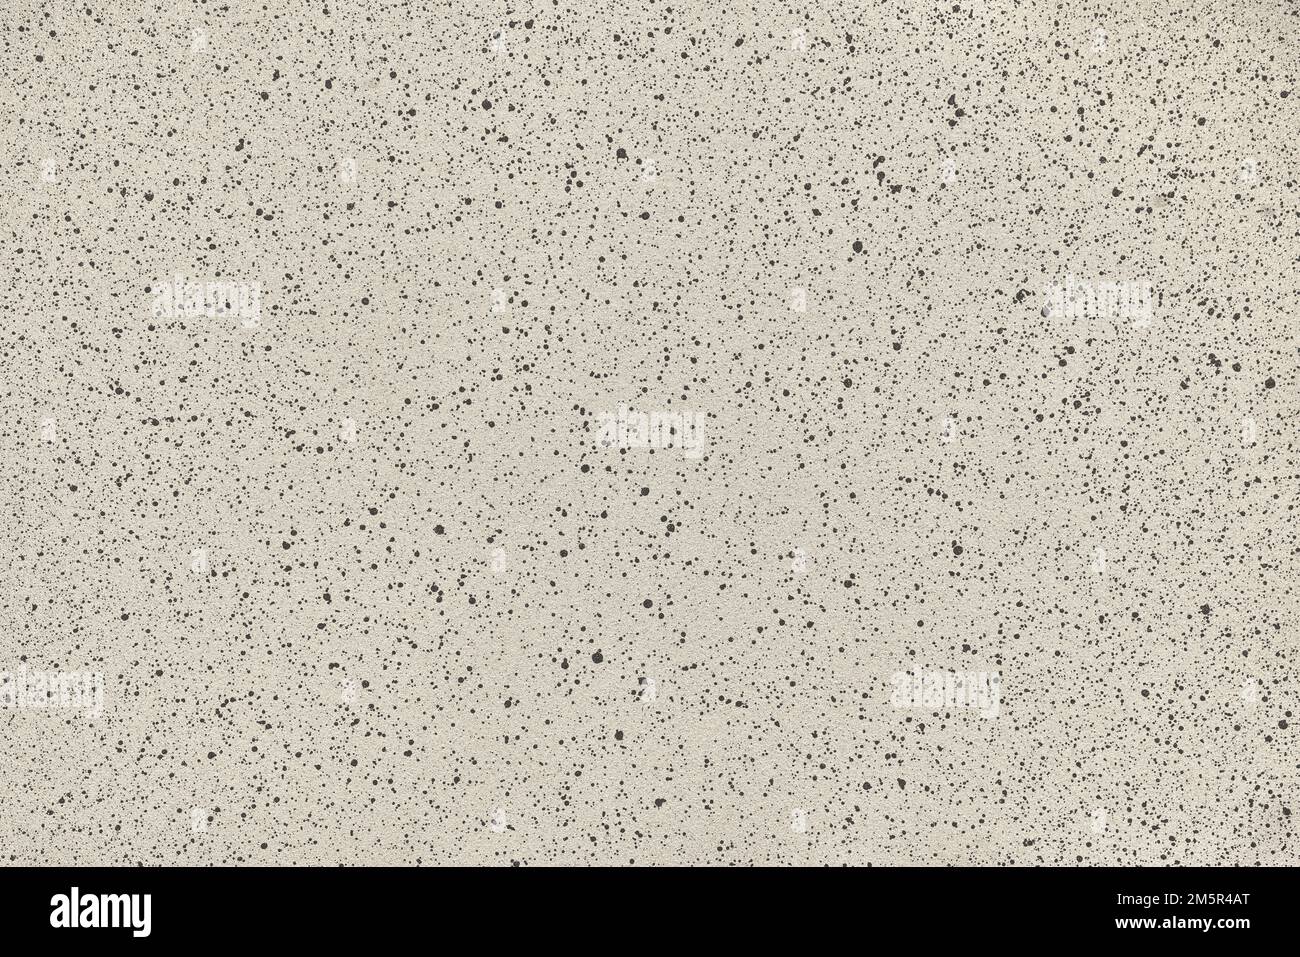 Fond de texture beige et noir de la surface en pierre. Photographie haute résolution Banque D'Images